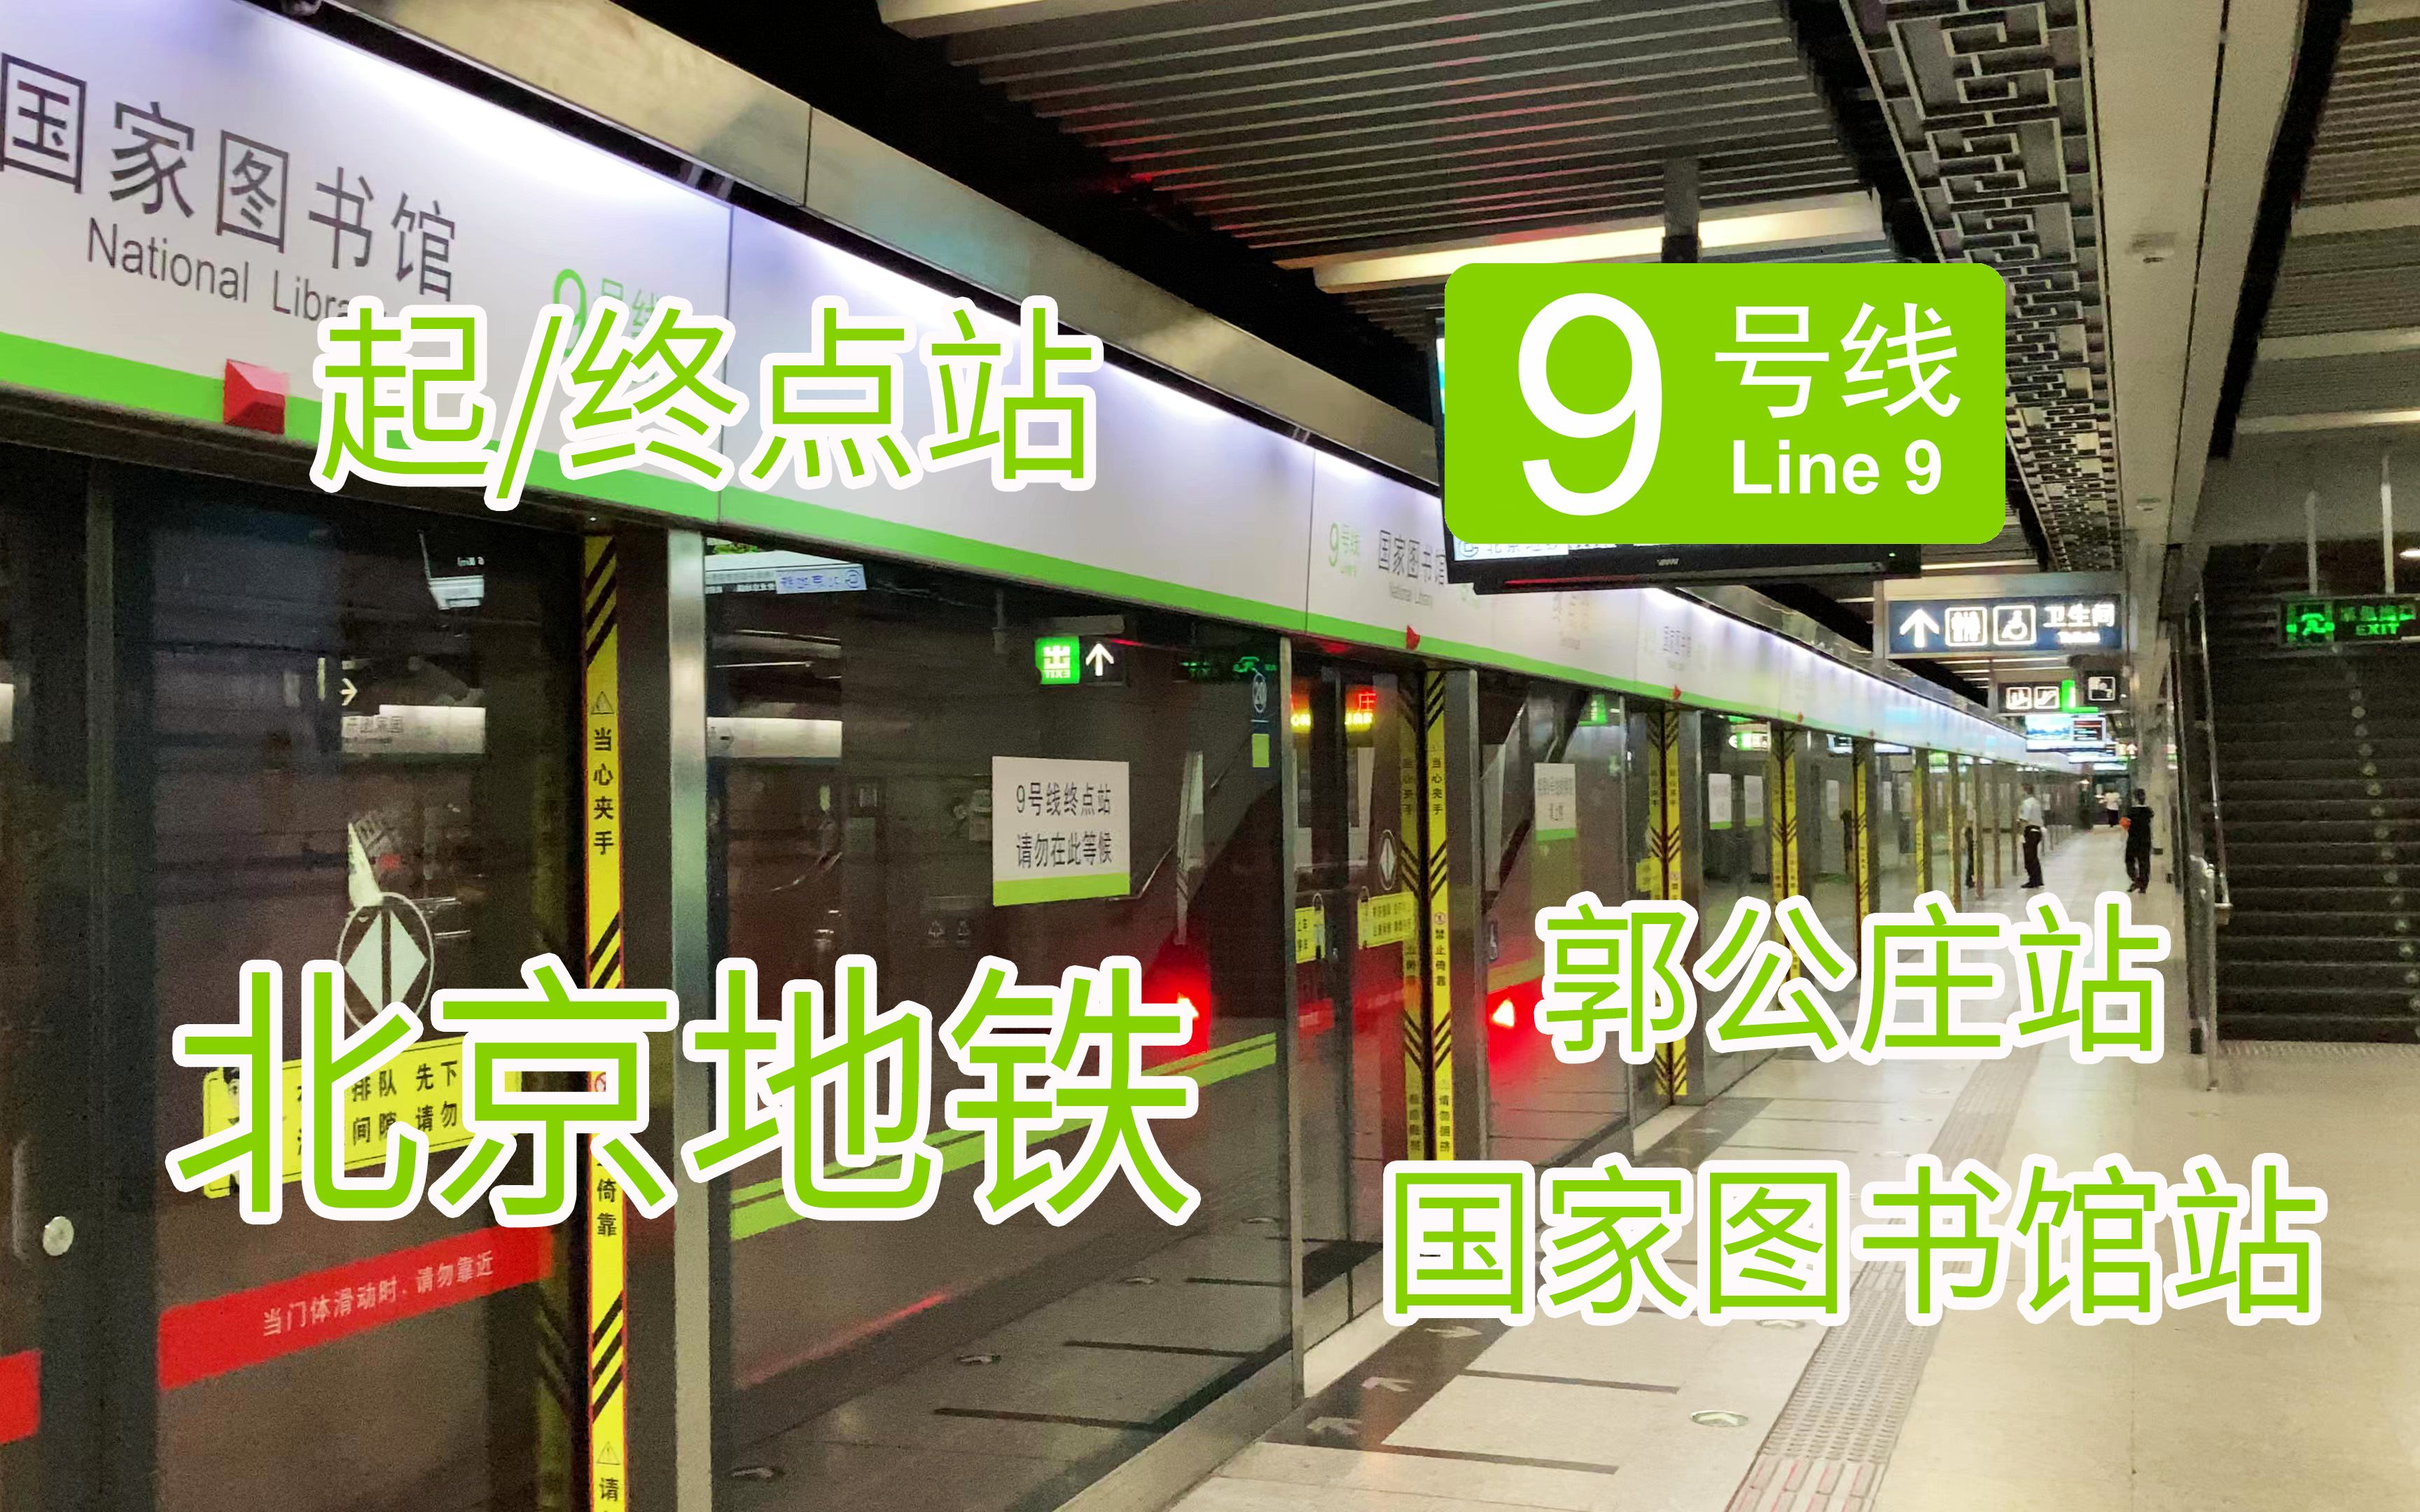 【北京地铁系列】一半以上都是换乘站!